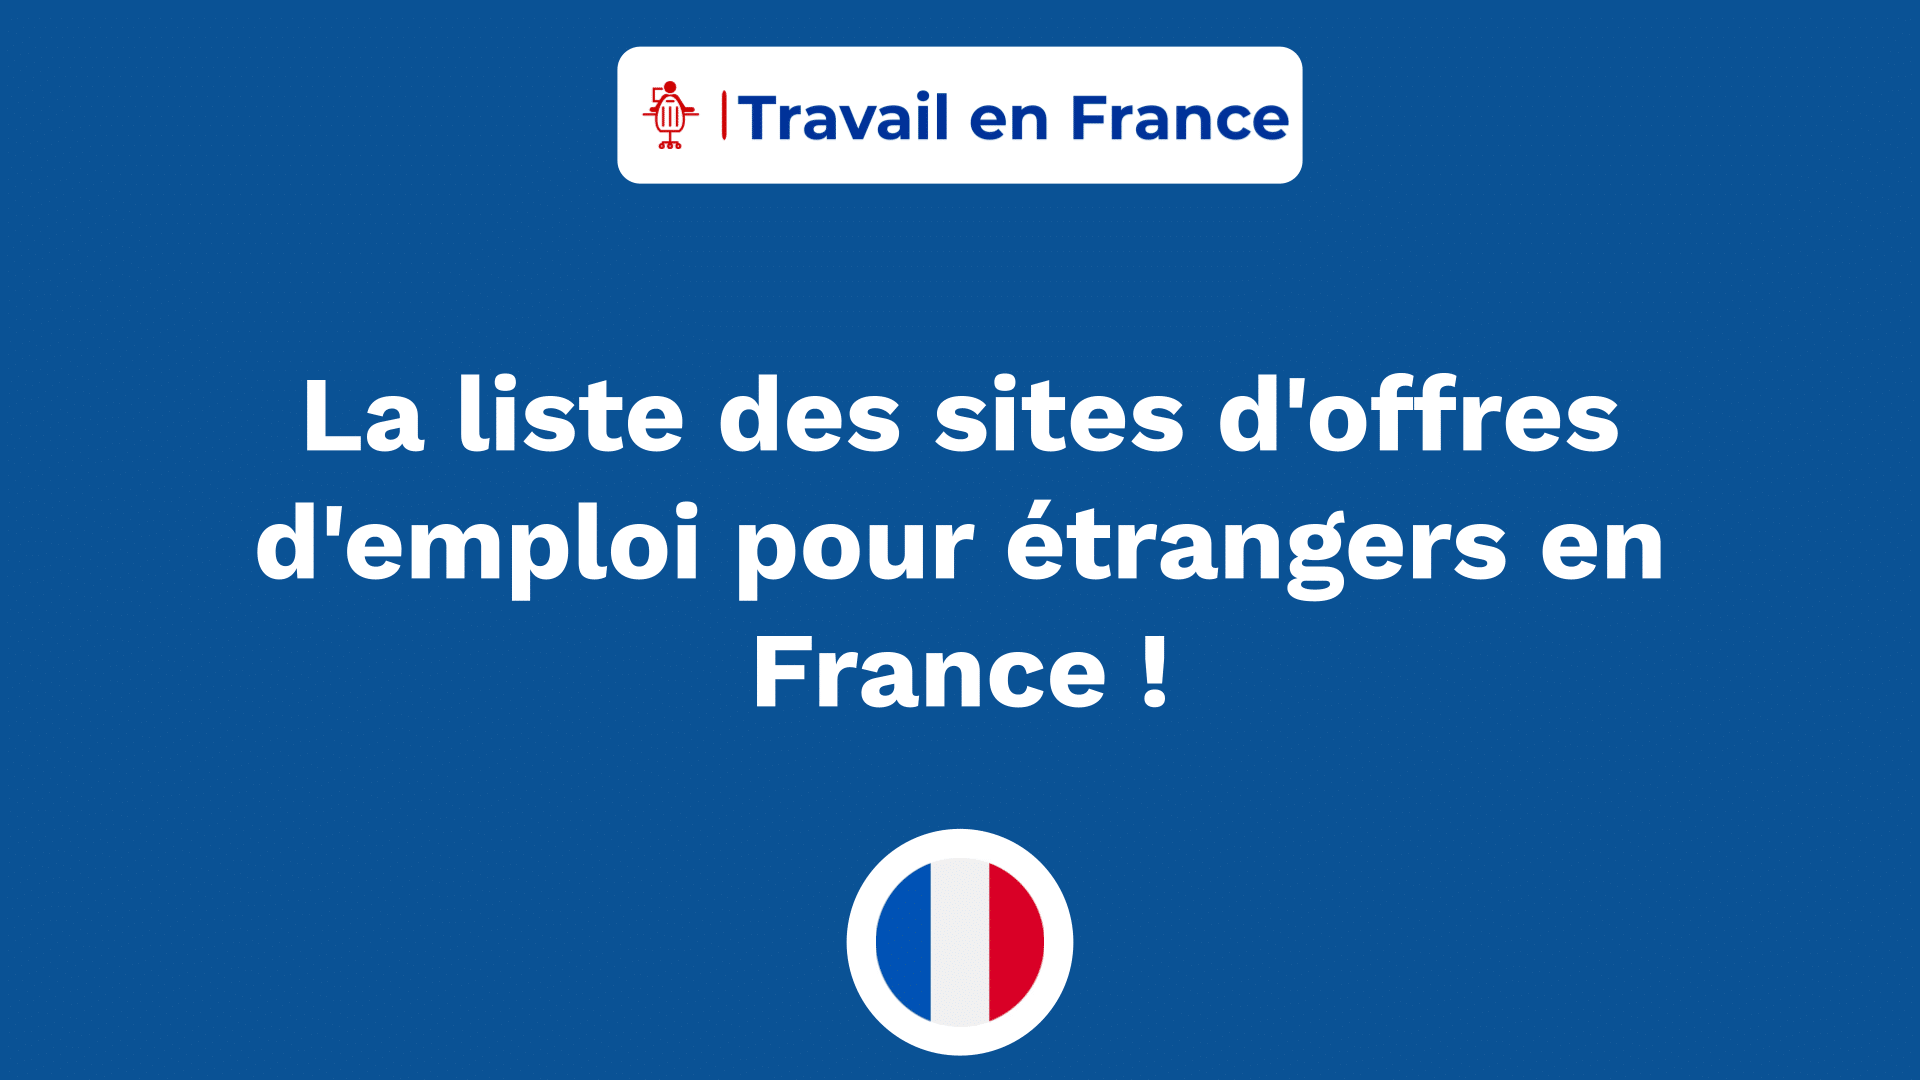 La liste des sites d'offres d'emploi pour étrangers en France